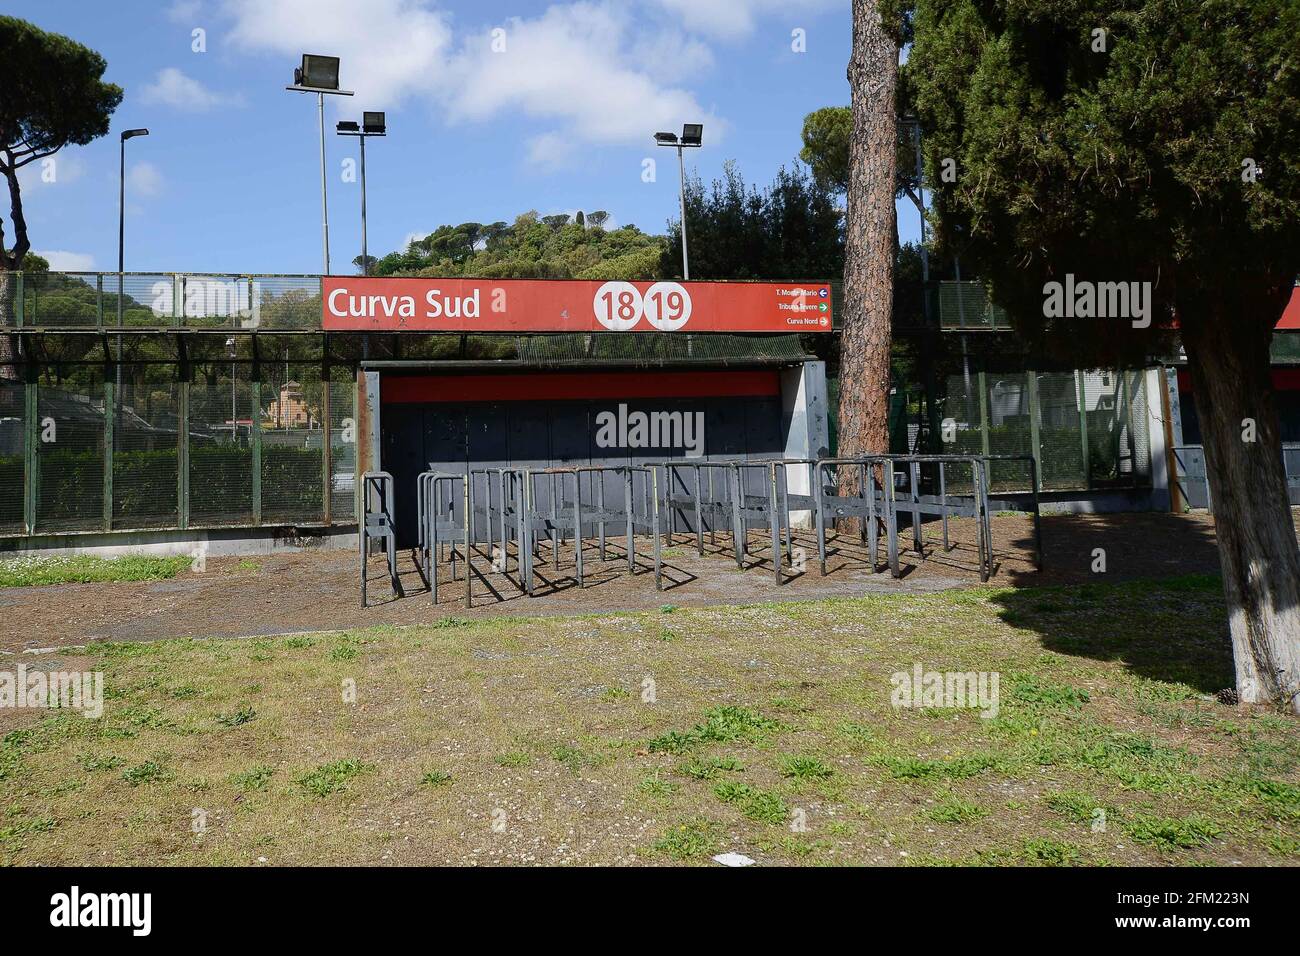 Foto IPP/Roberto Ramaccia Roma 5/05/2021  Stadio Olimpico pre Euro 2020-2021 Nella foto l’ingresso della curva sud dello stadio olimpico  Italy Photo Stock Photo